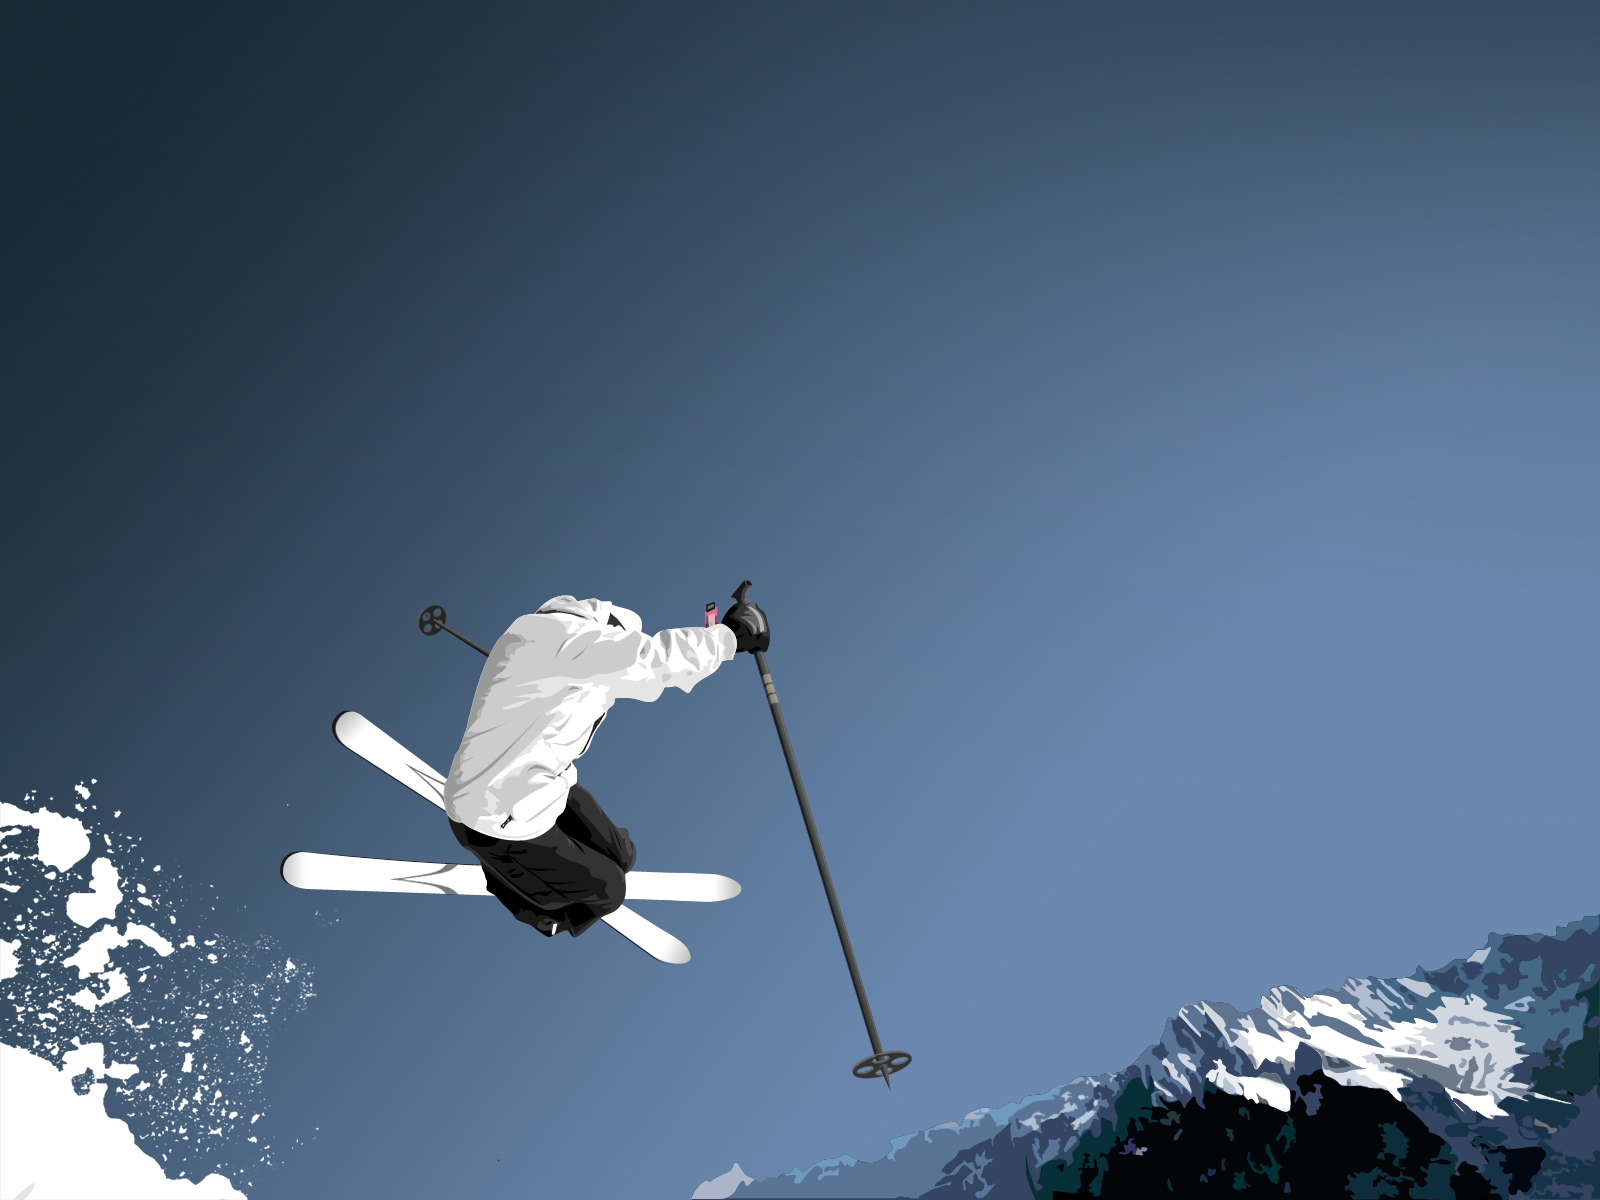 Gledaj i uči: Prvi dan na skijanju, kako skinuti snijeg sa skija #video, Life.ba